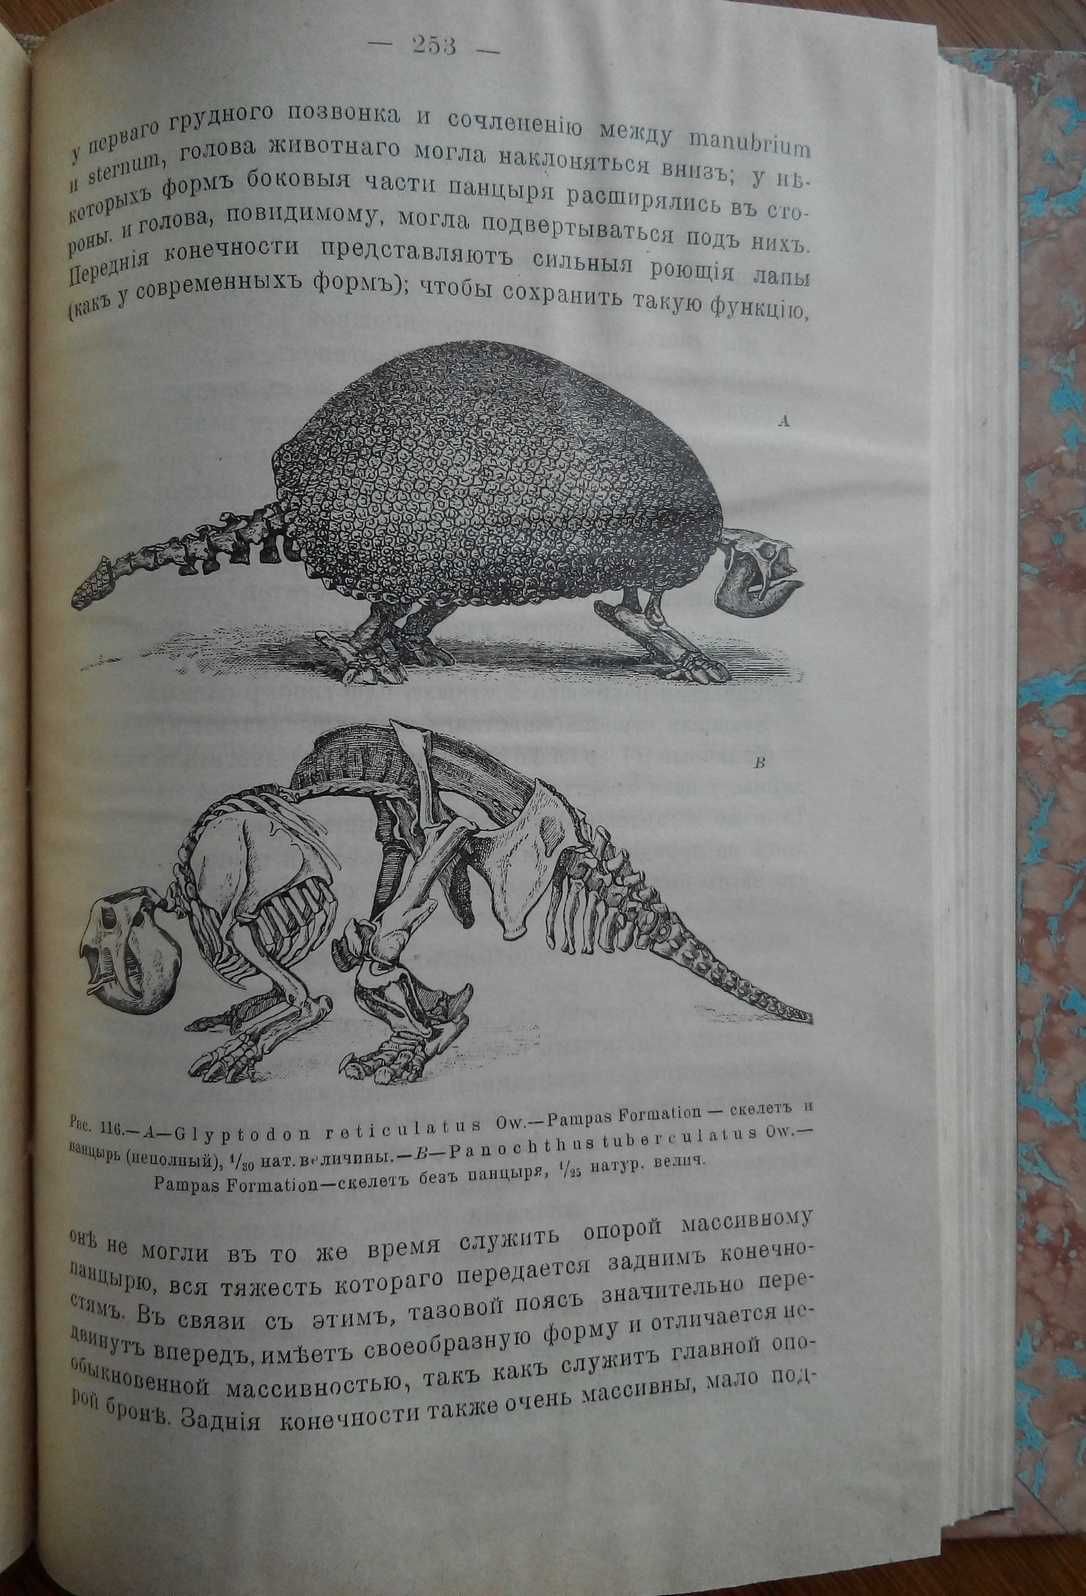 Палеонтология 1906г. С 175 рисунками. Борисяк А.